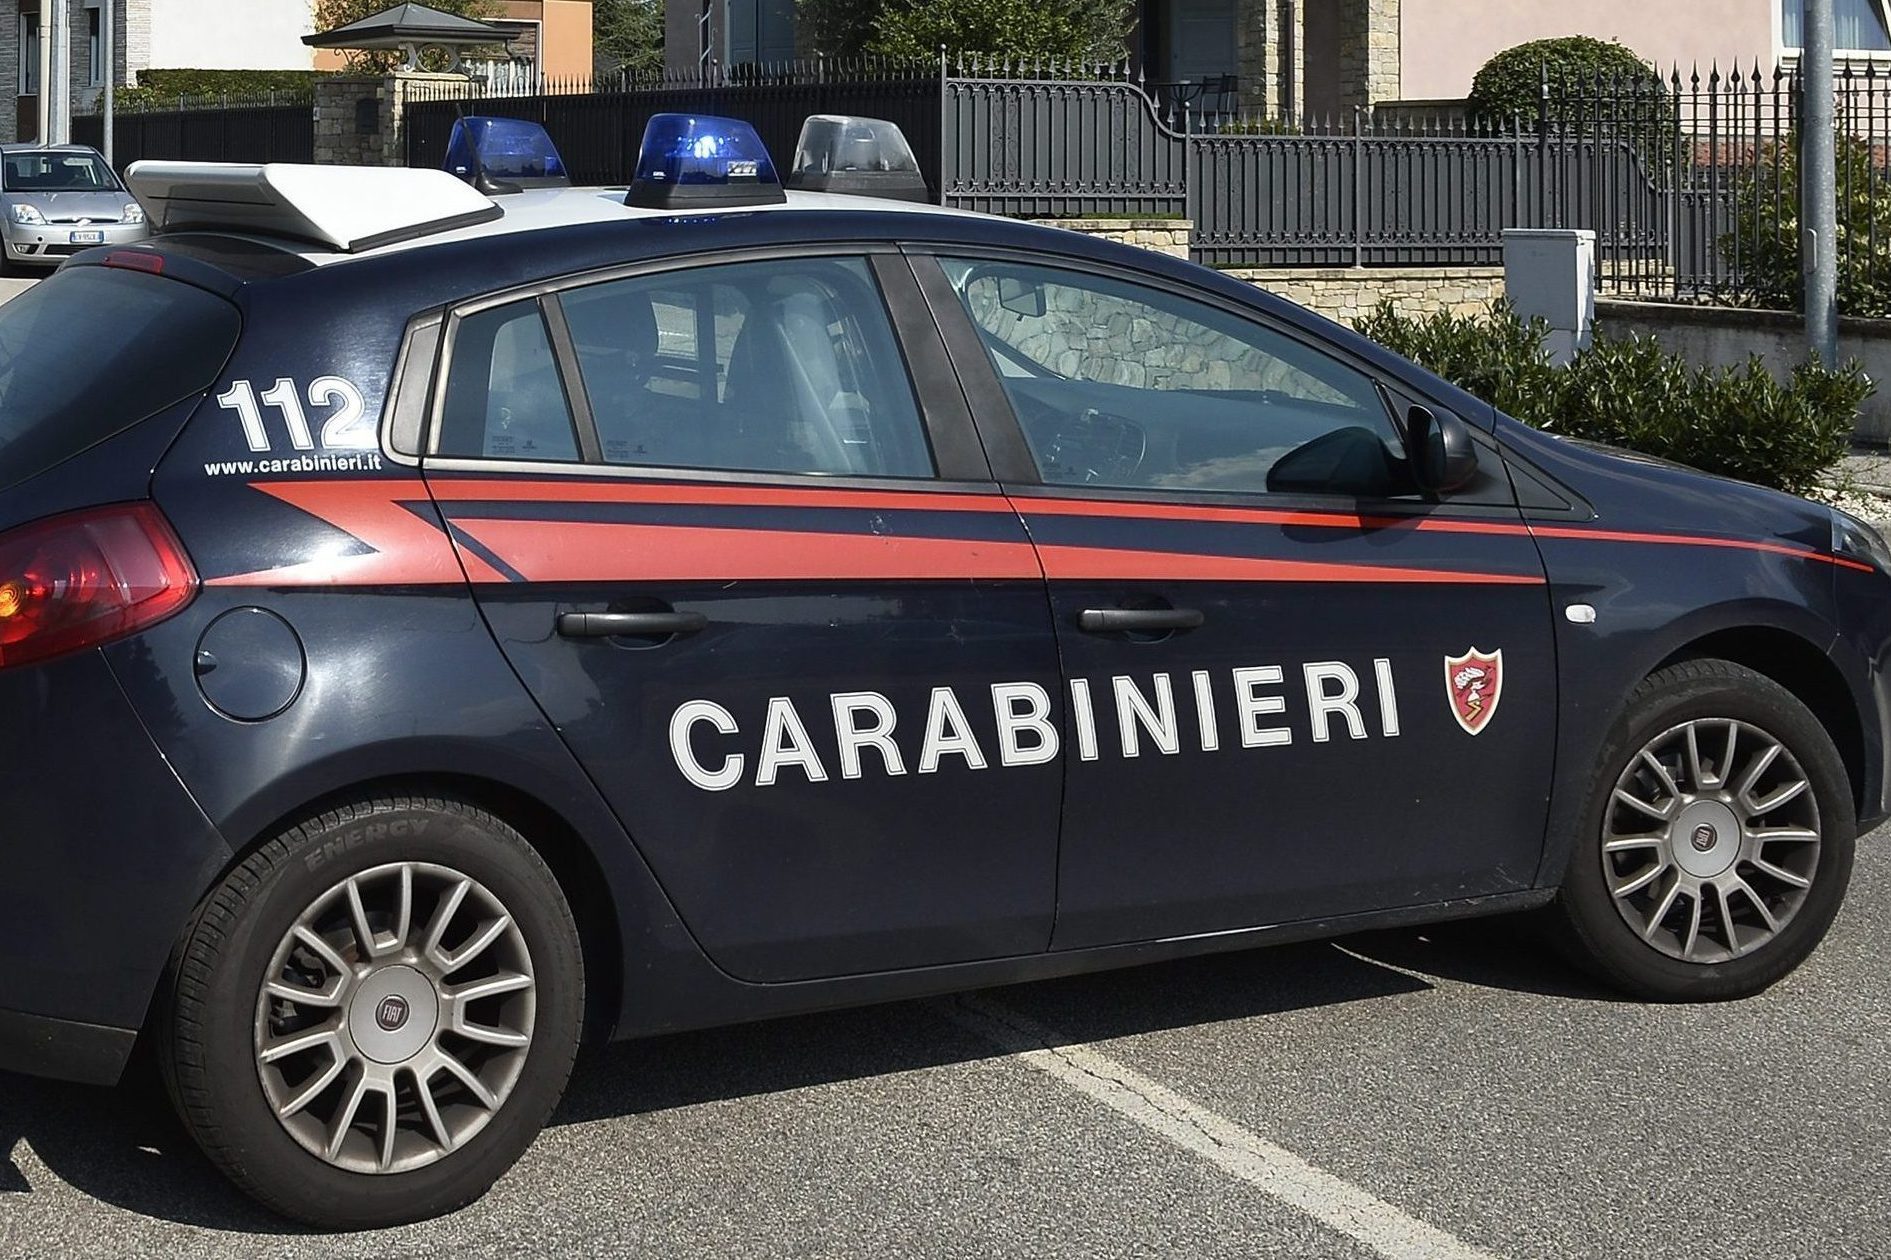 Καραμπινιέρι Αστυνομία Ιταλία